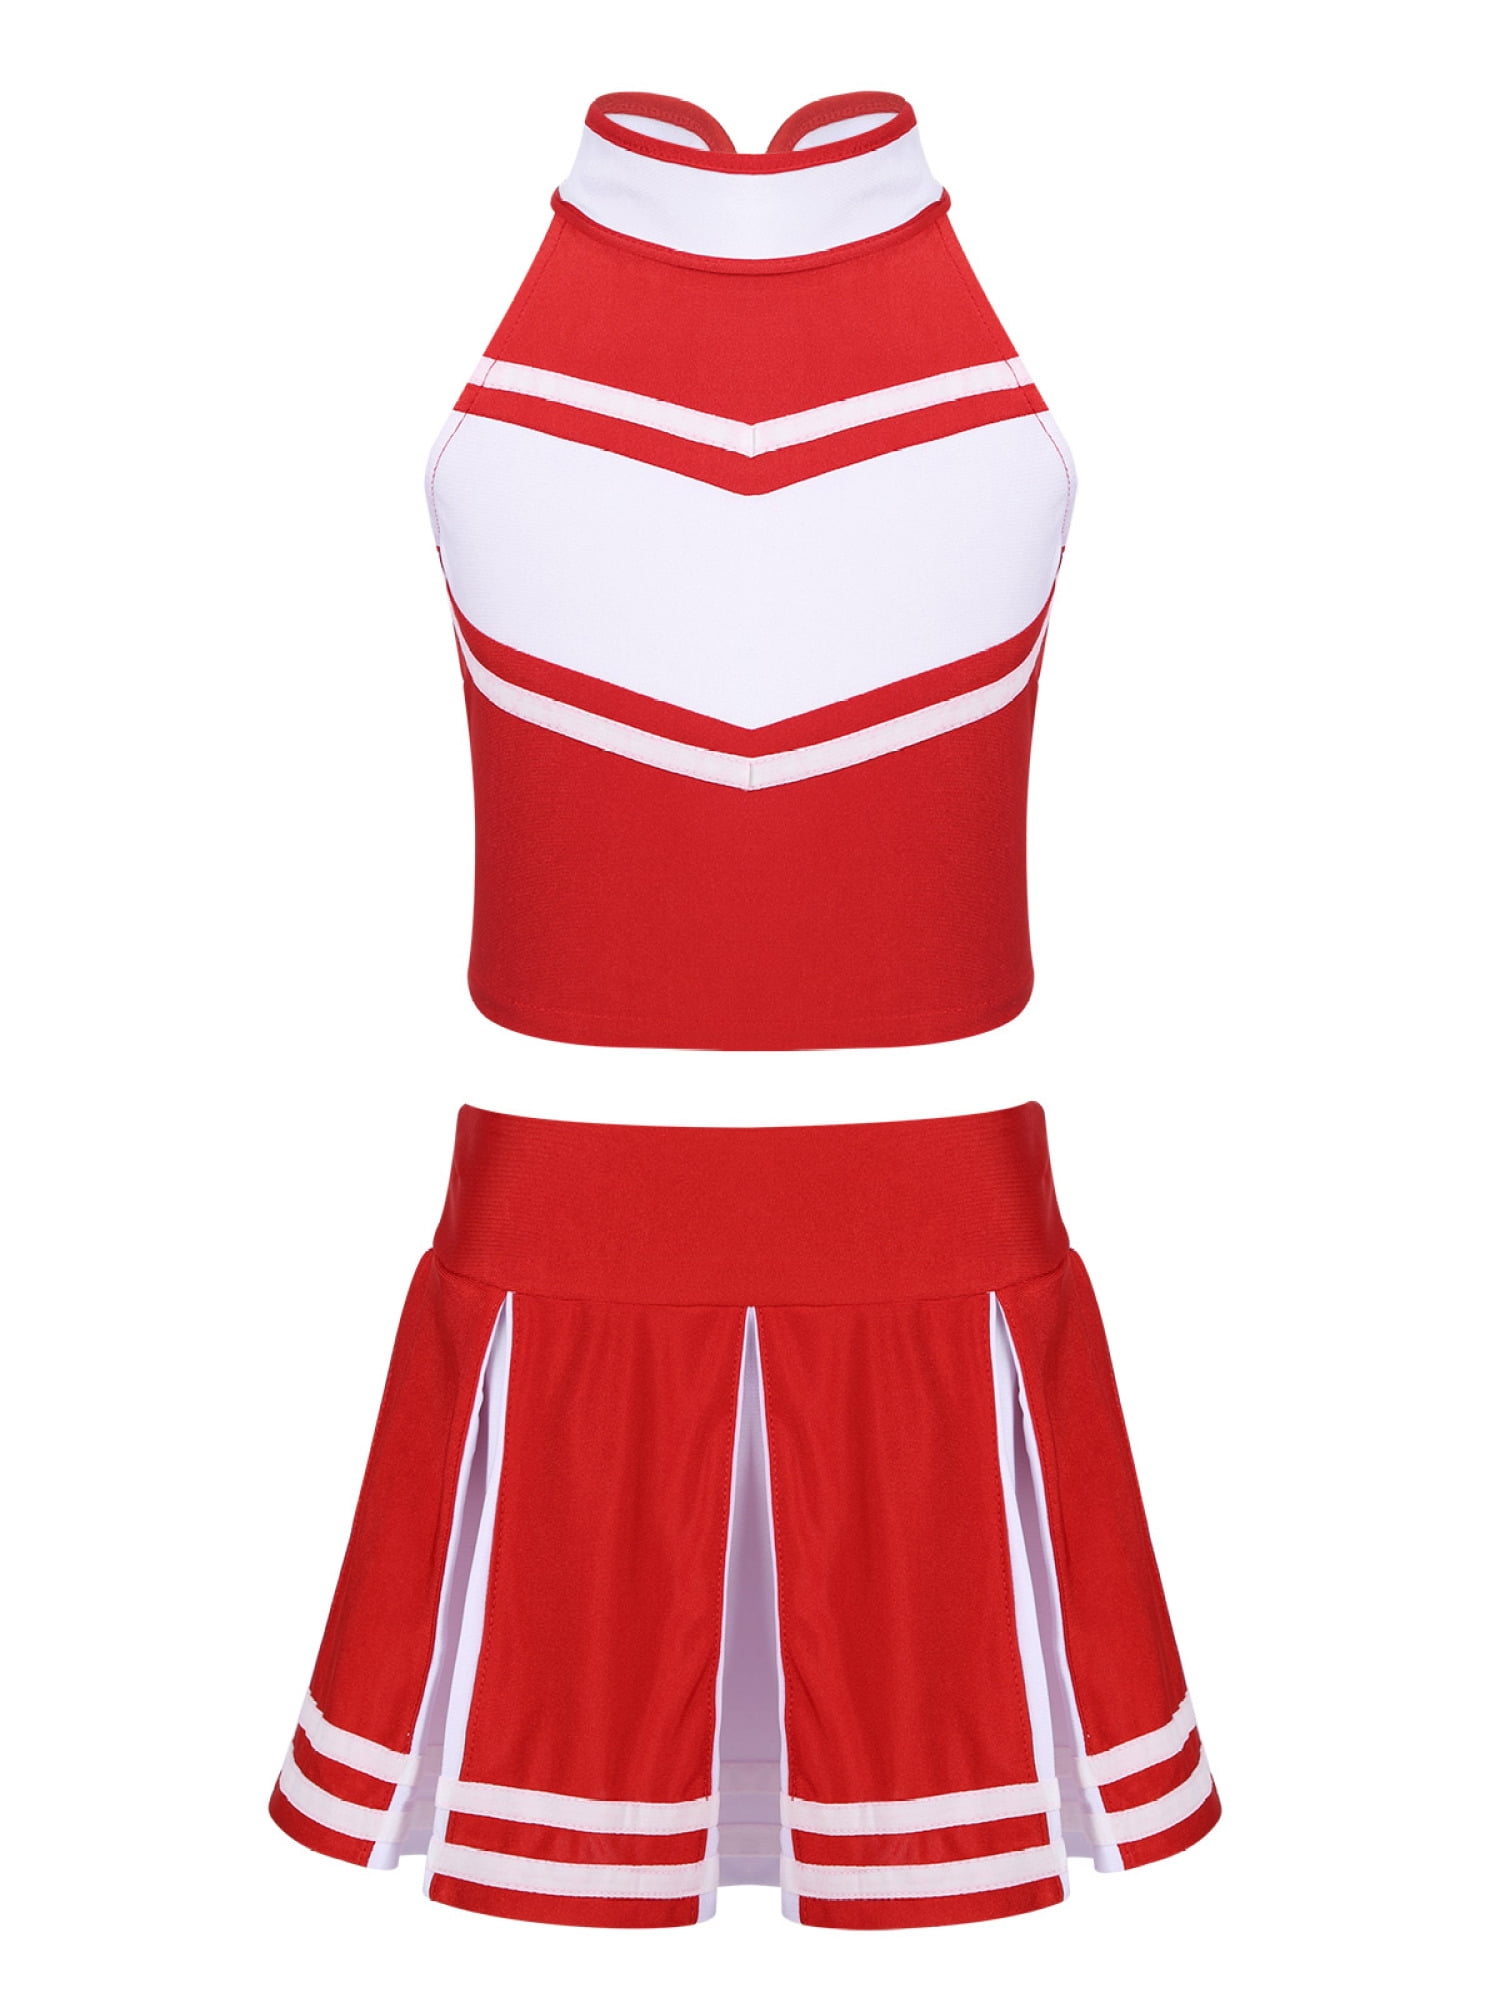 Real Authentic Rittman Ohio EYF Cheerleading Uniform Cheer Red White Chasse 